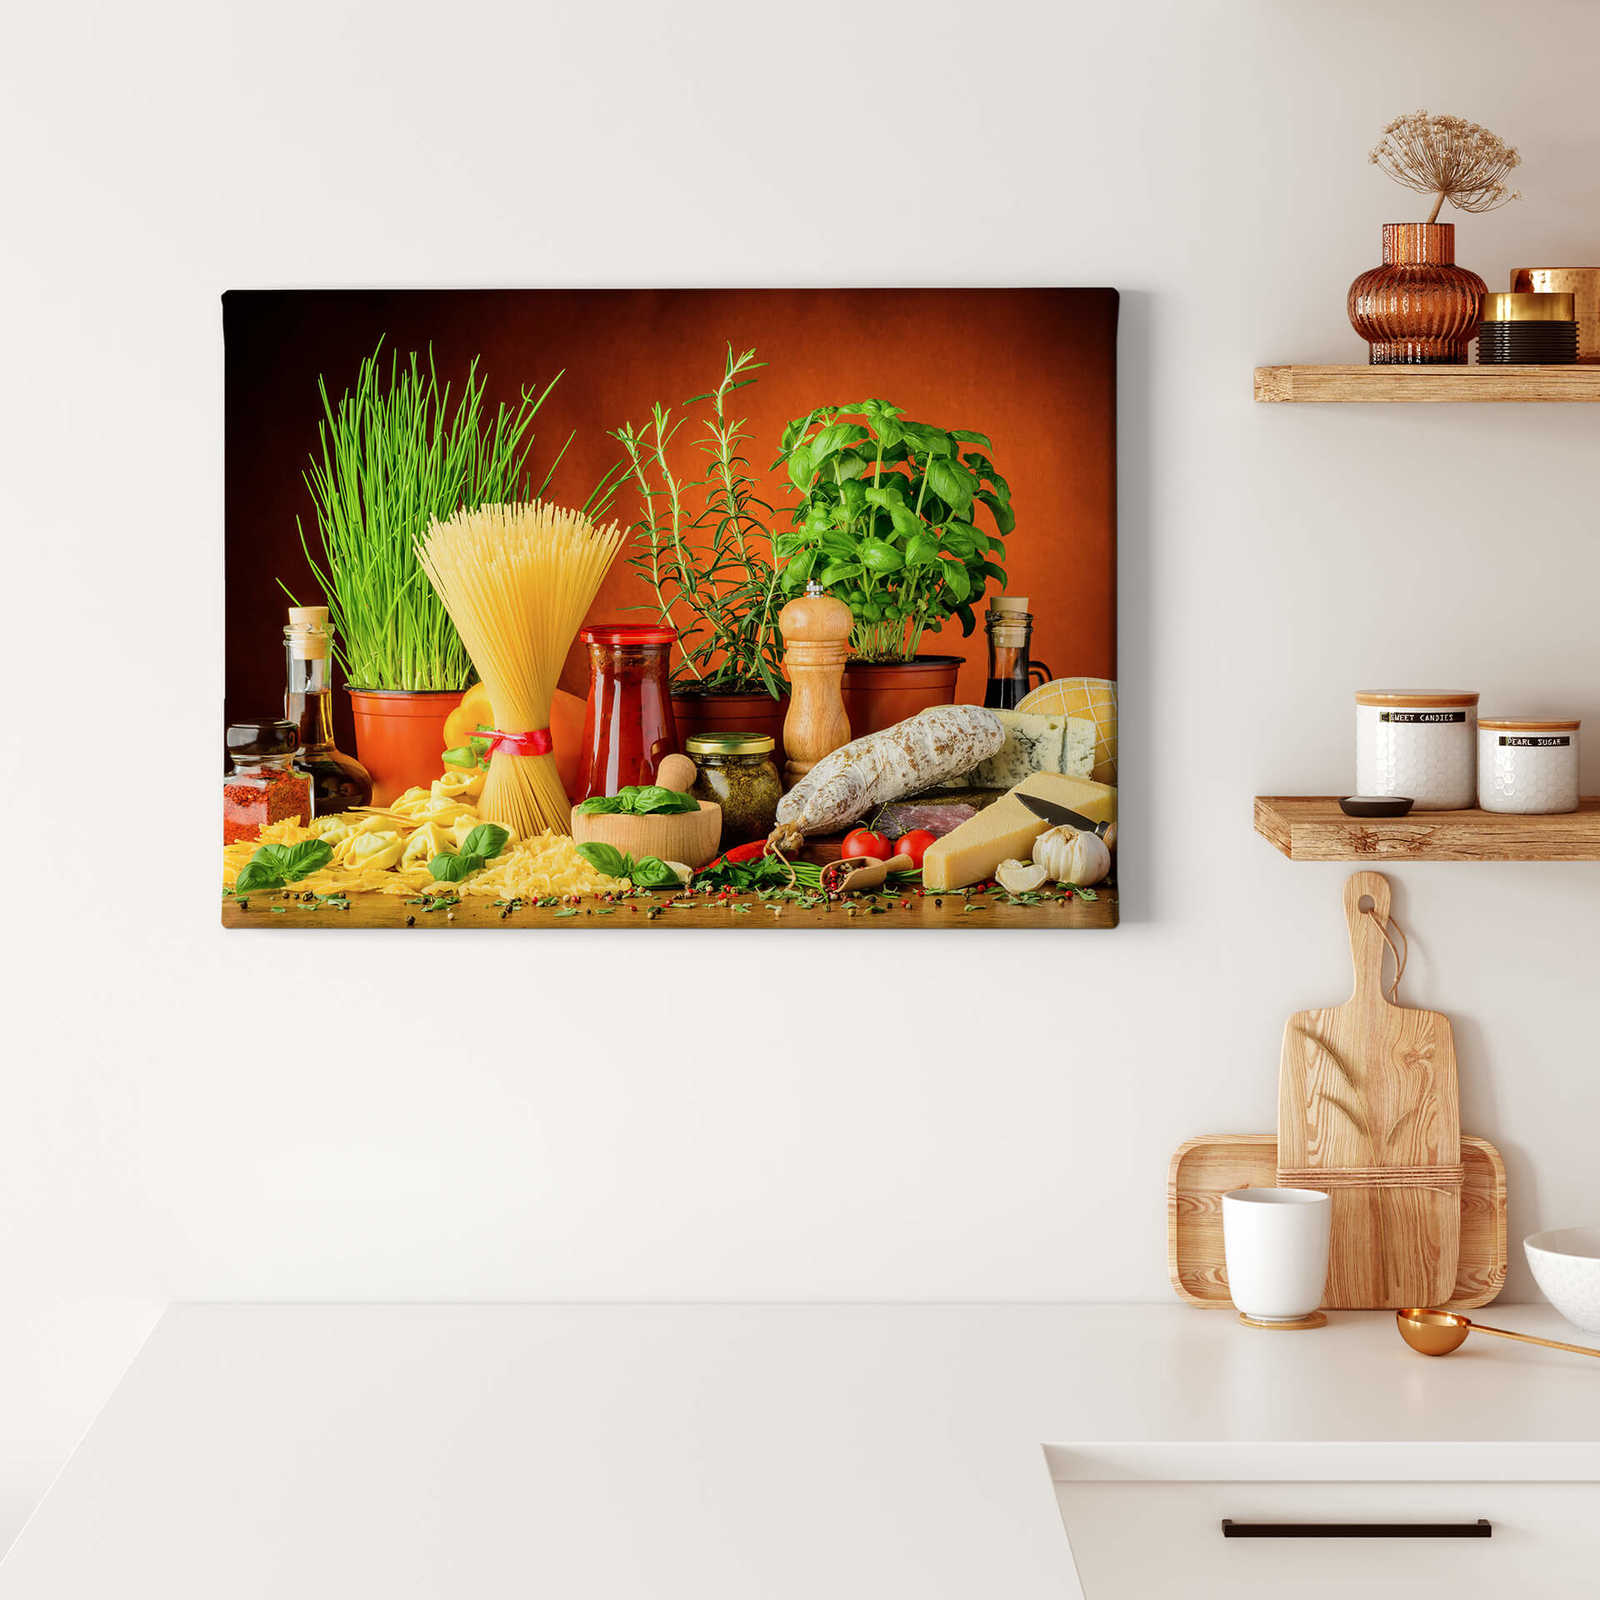             Canvas schilderij Italiaanse keuken met pasta & kruiden - 0,70 m x 0,50 m
        